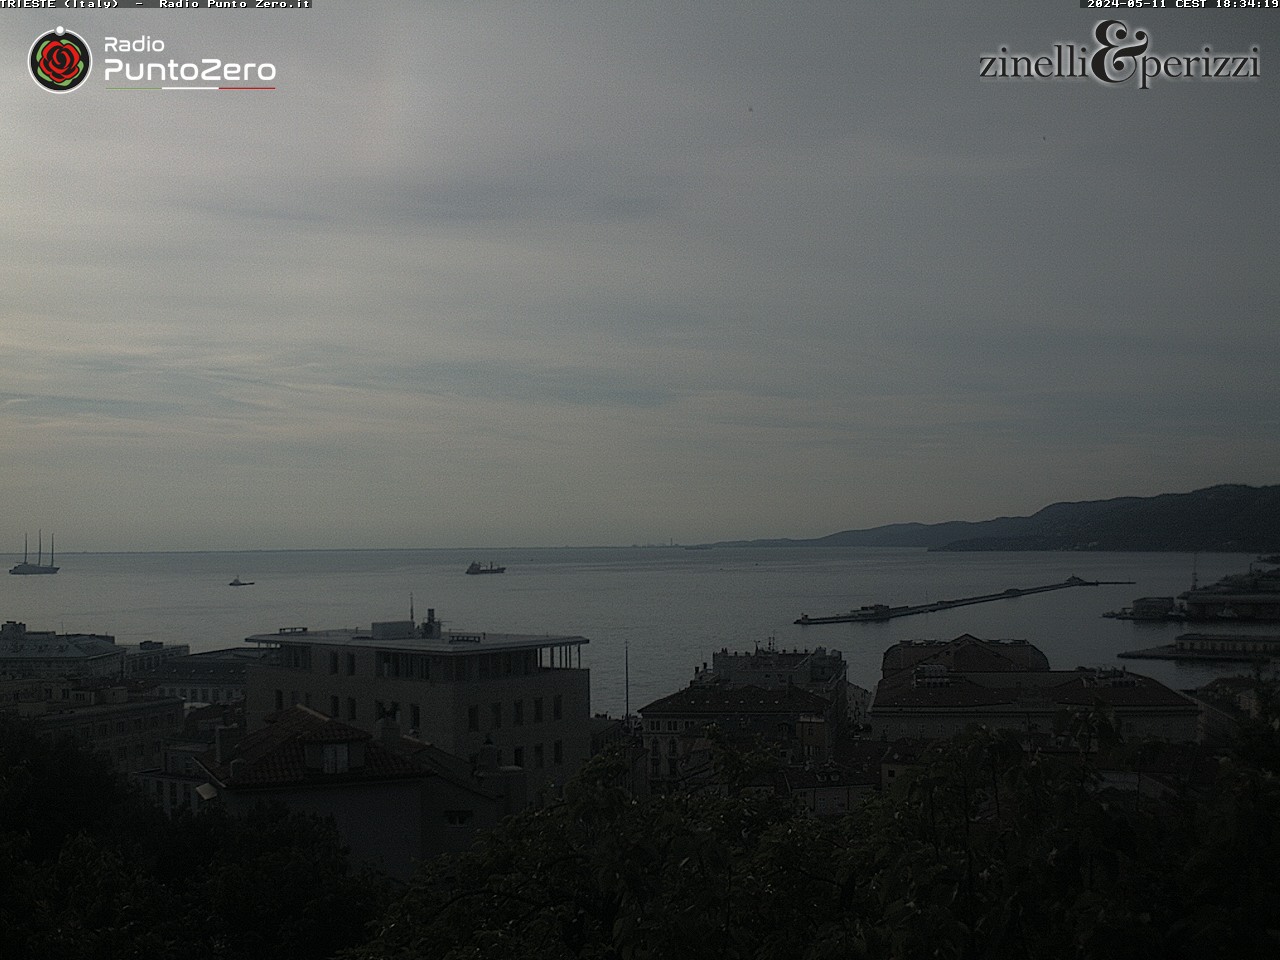 Trieste Di. 05:51